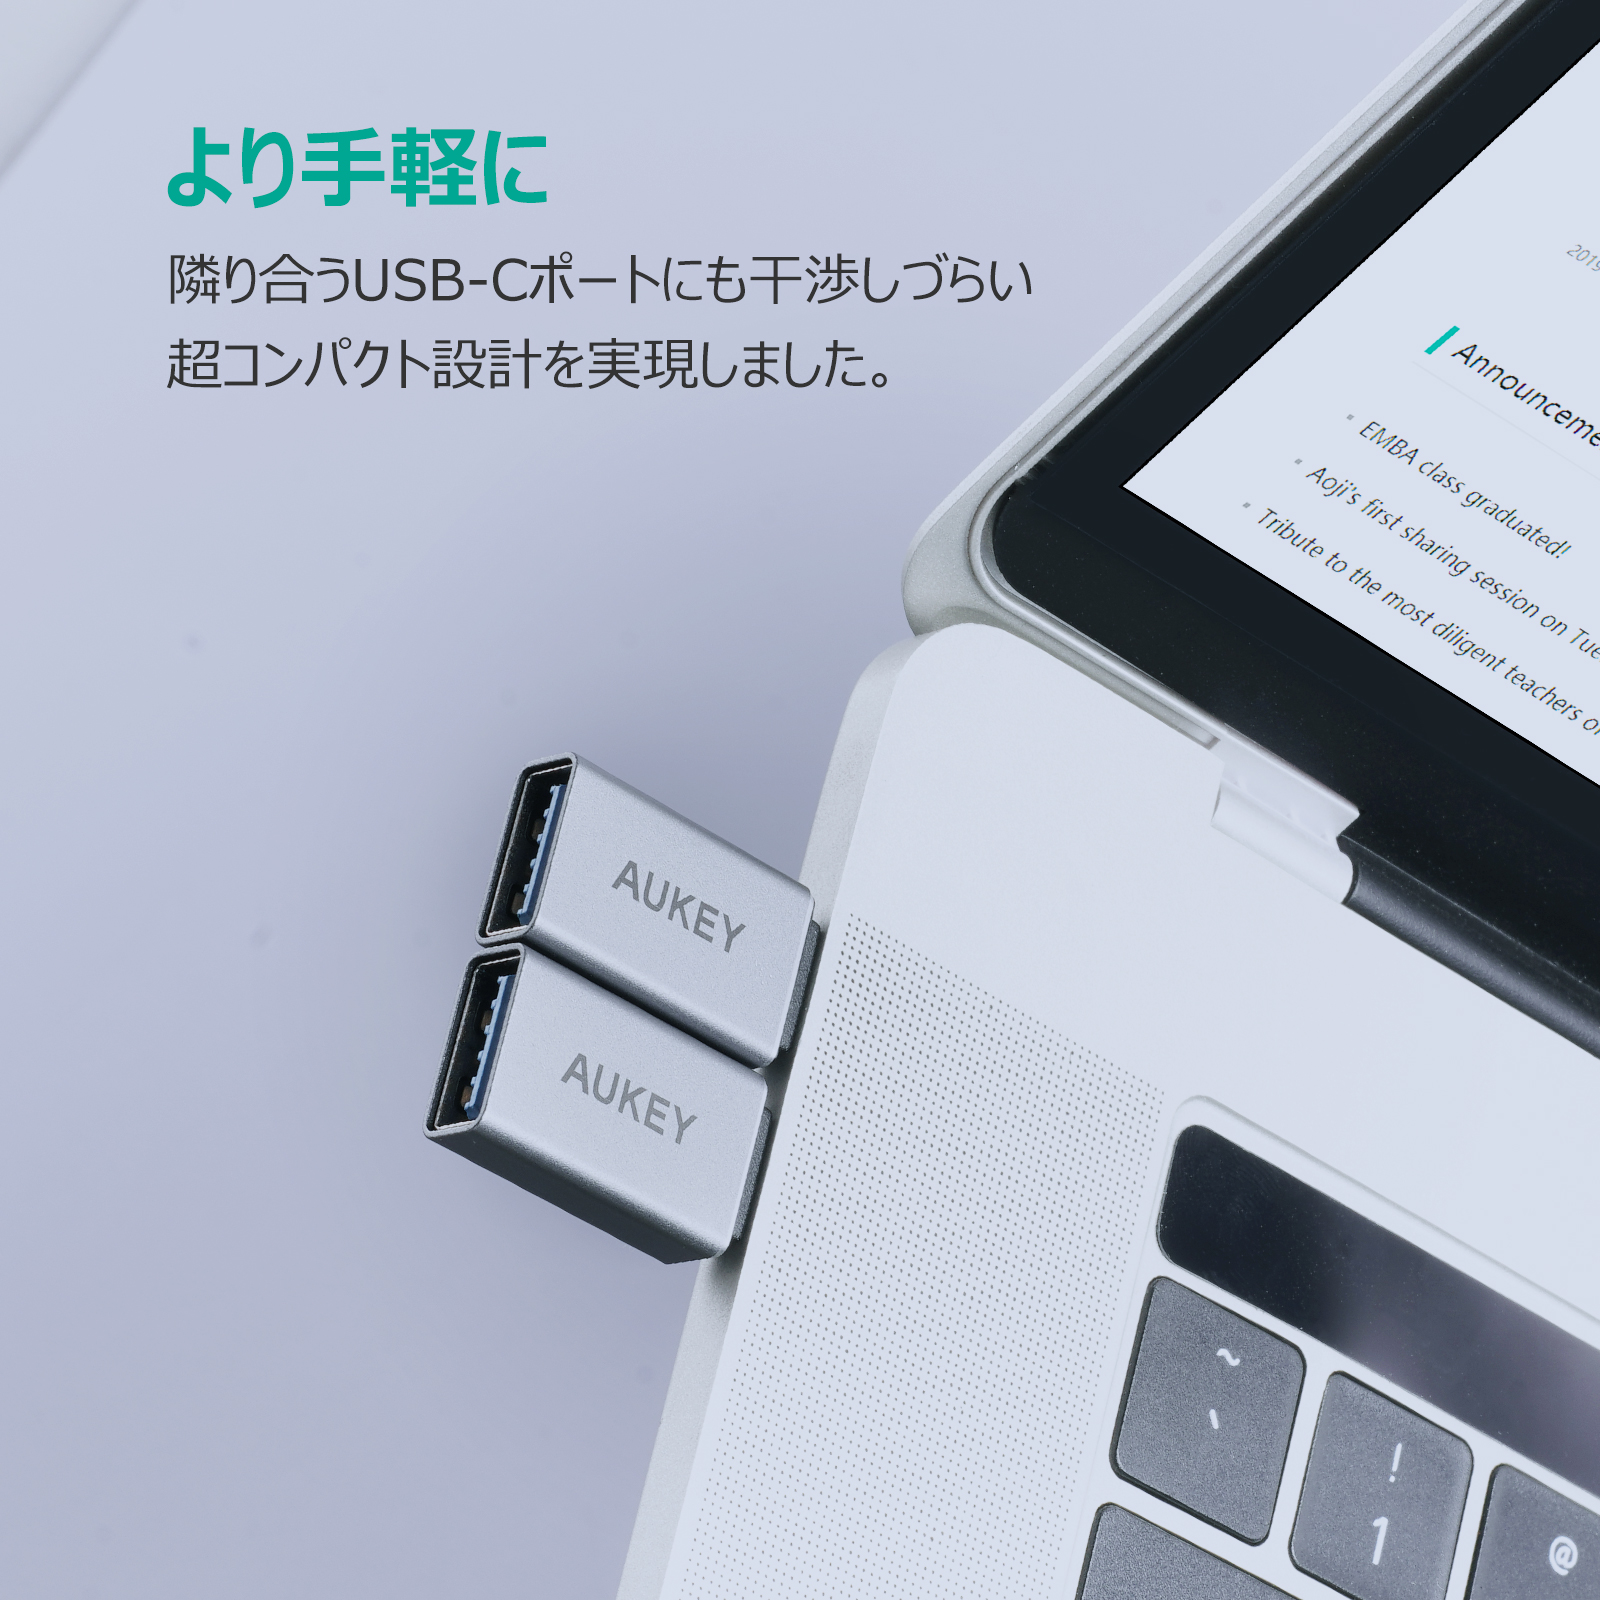 USB 3.0 A to C 変換アダプター(2個セット) CB-A22